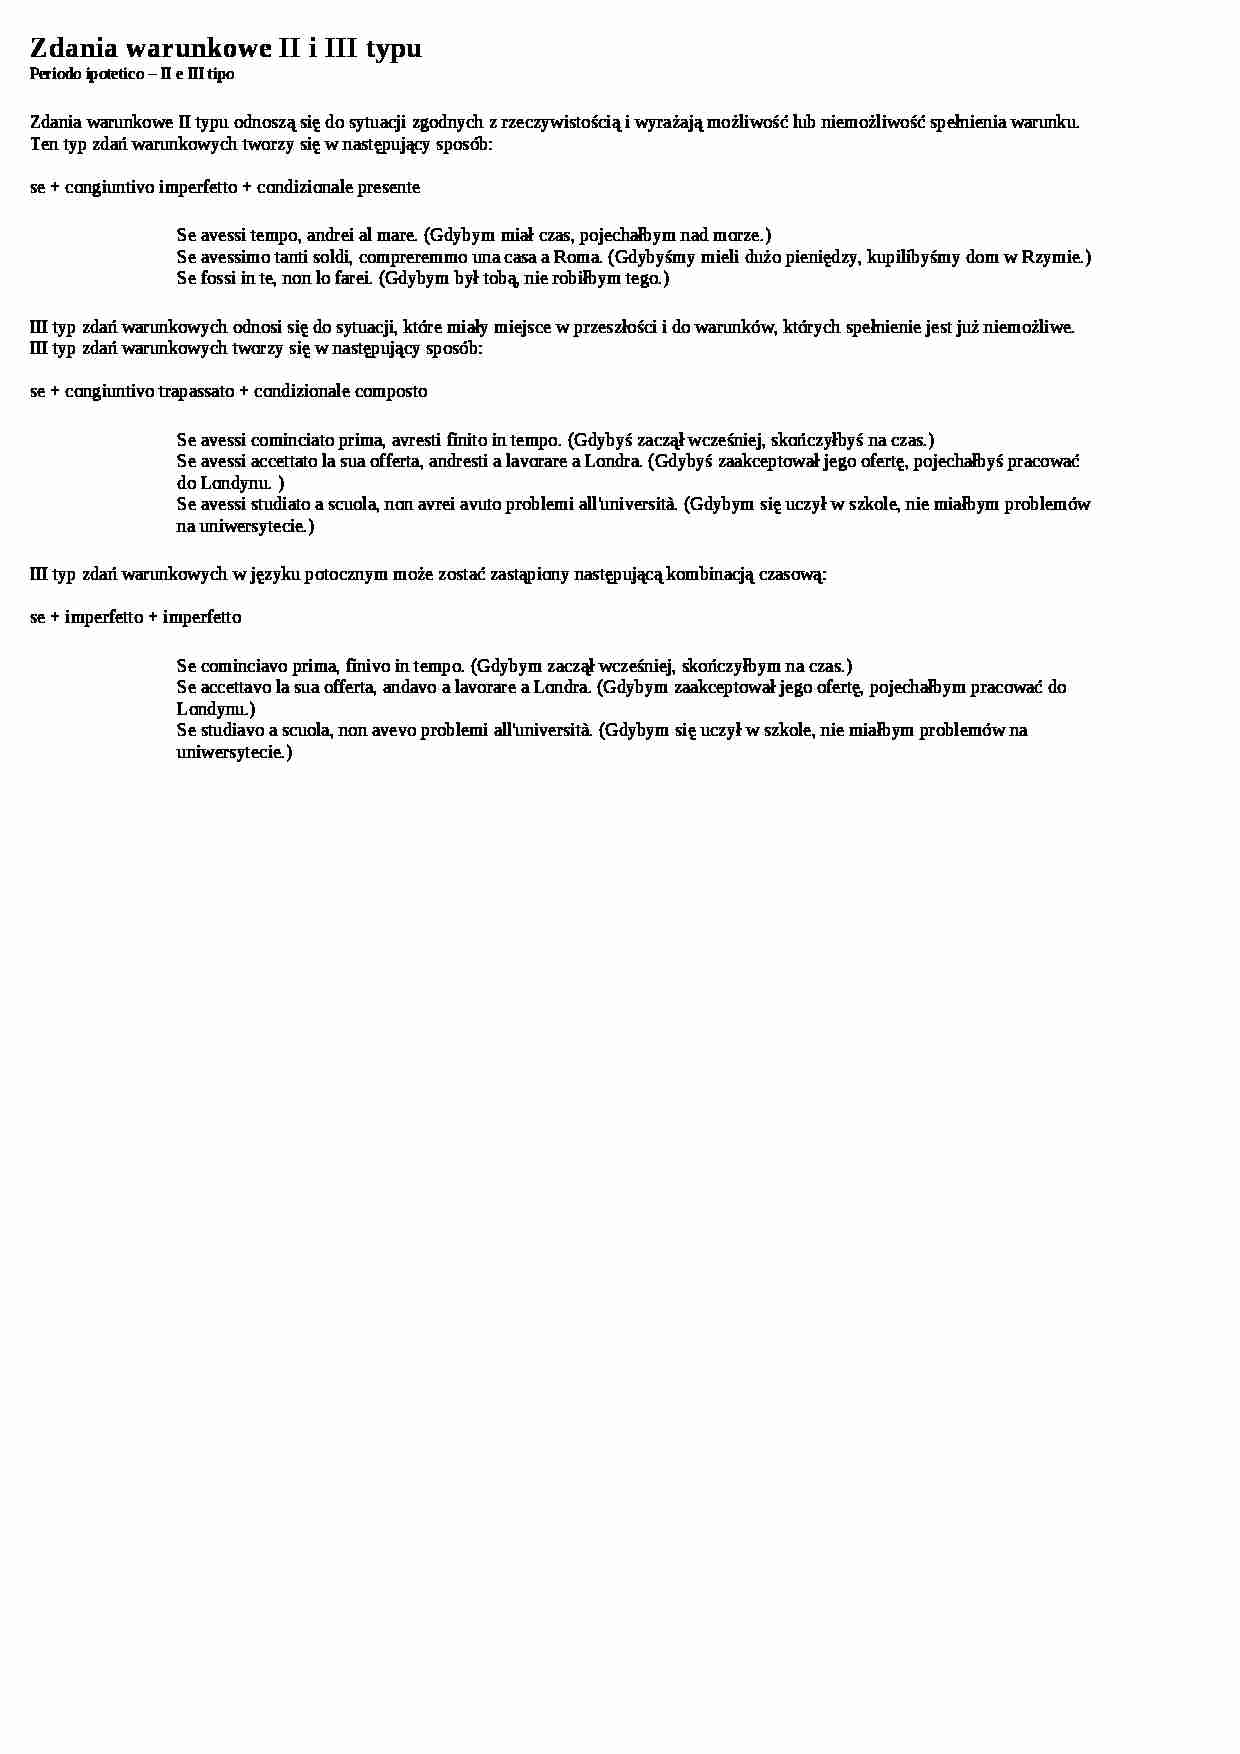 Zdania warunkowe II i III typu - wykład - strona 1